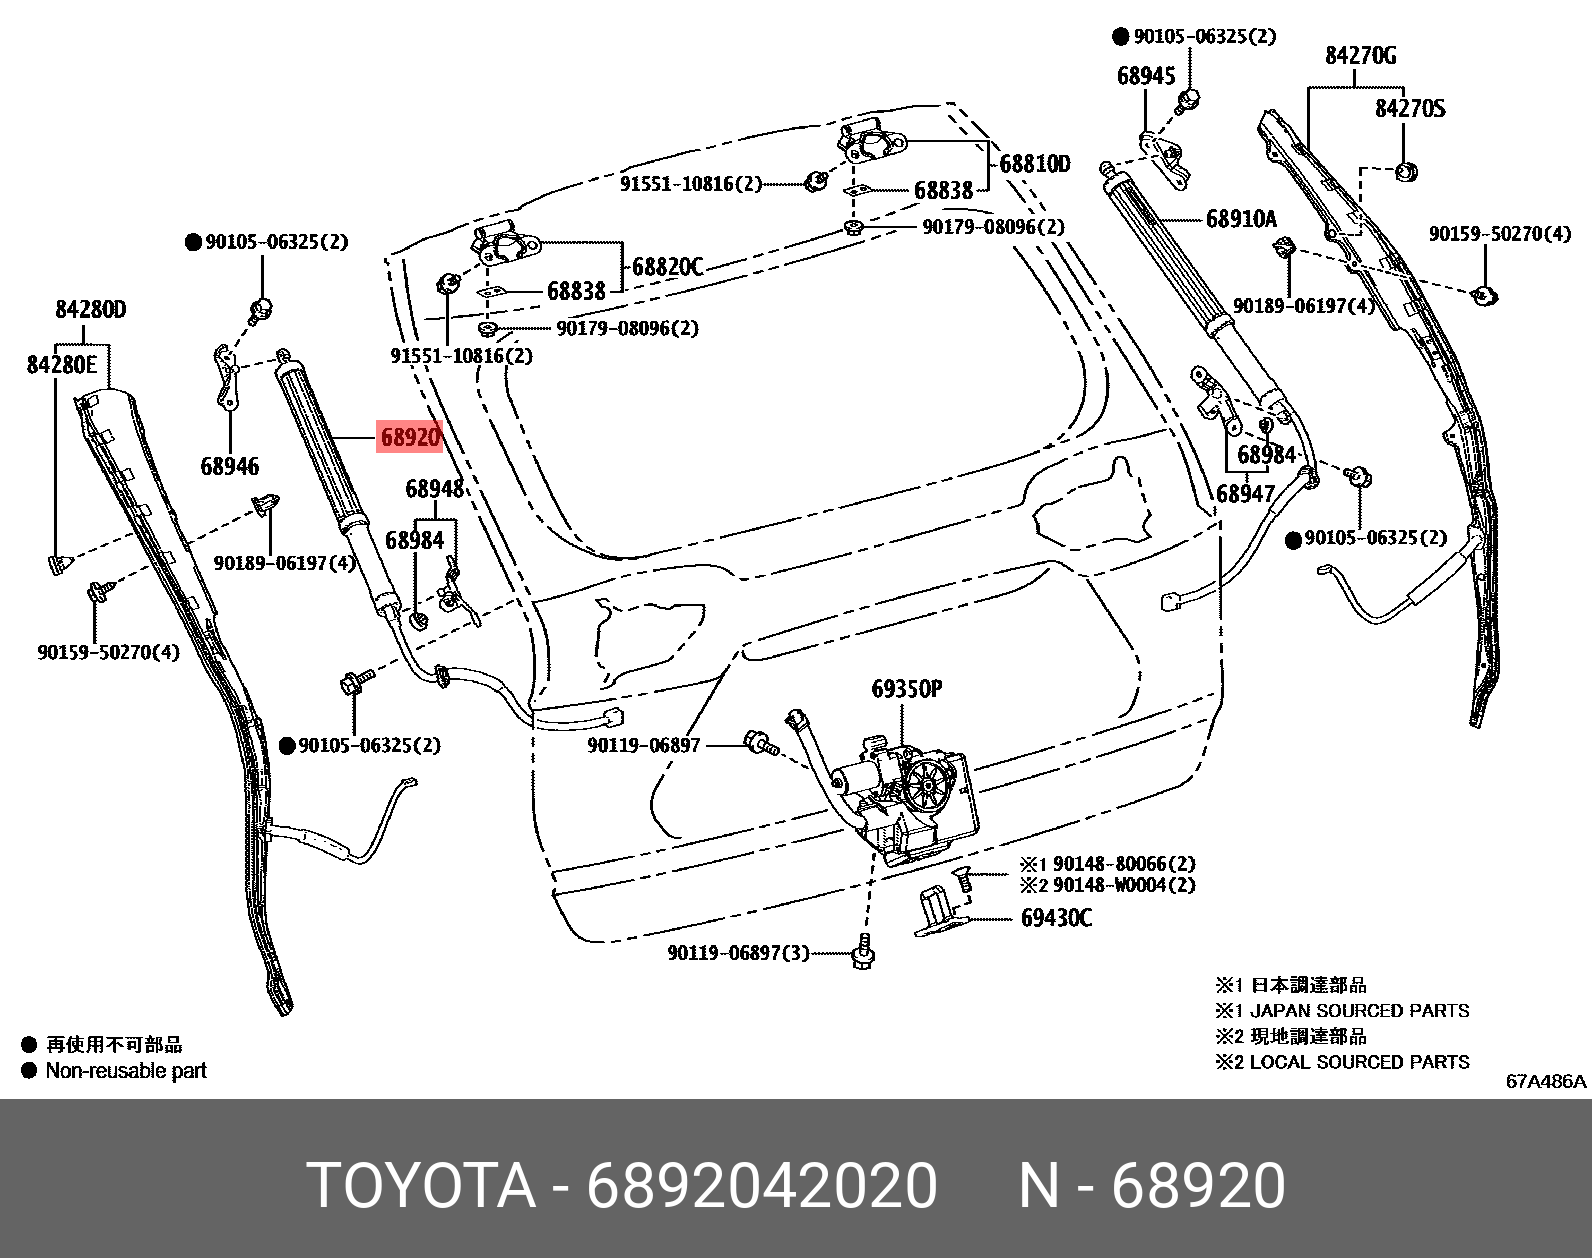 Привод двери багажника - Toyota 68920-42020